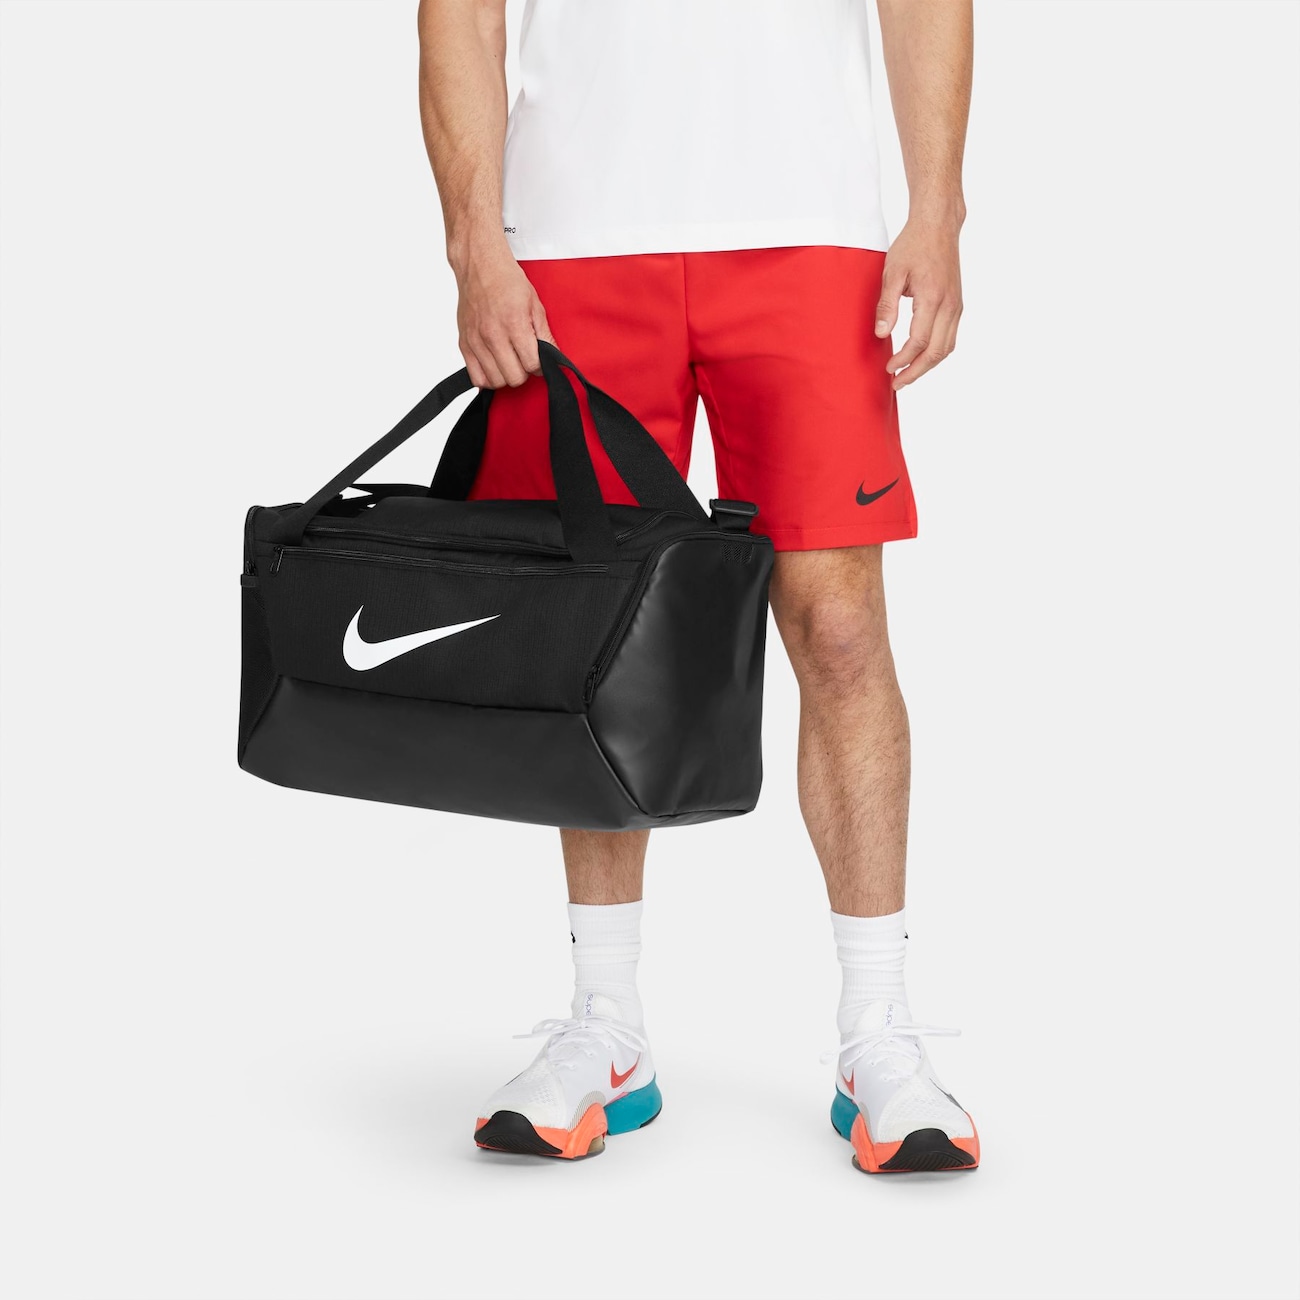 Bolsa Nike Brasilia Unissex